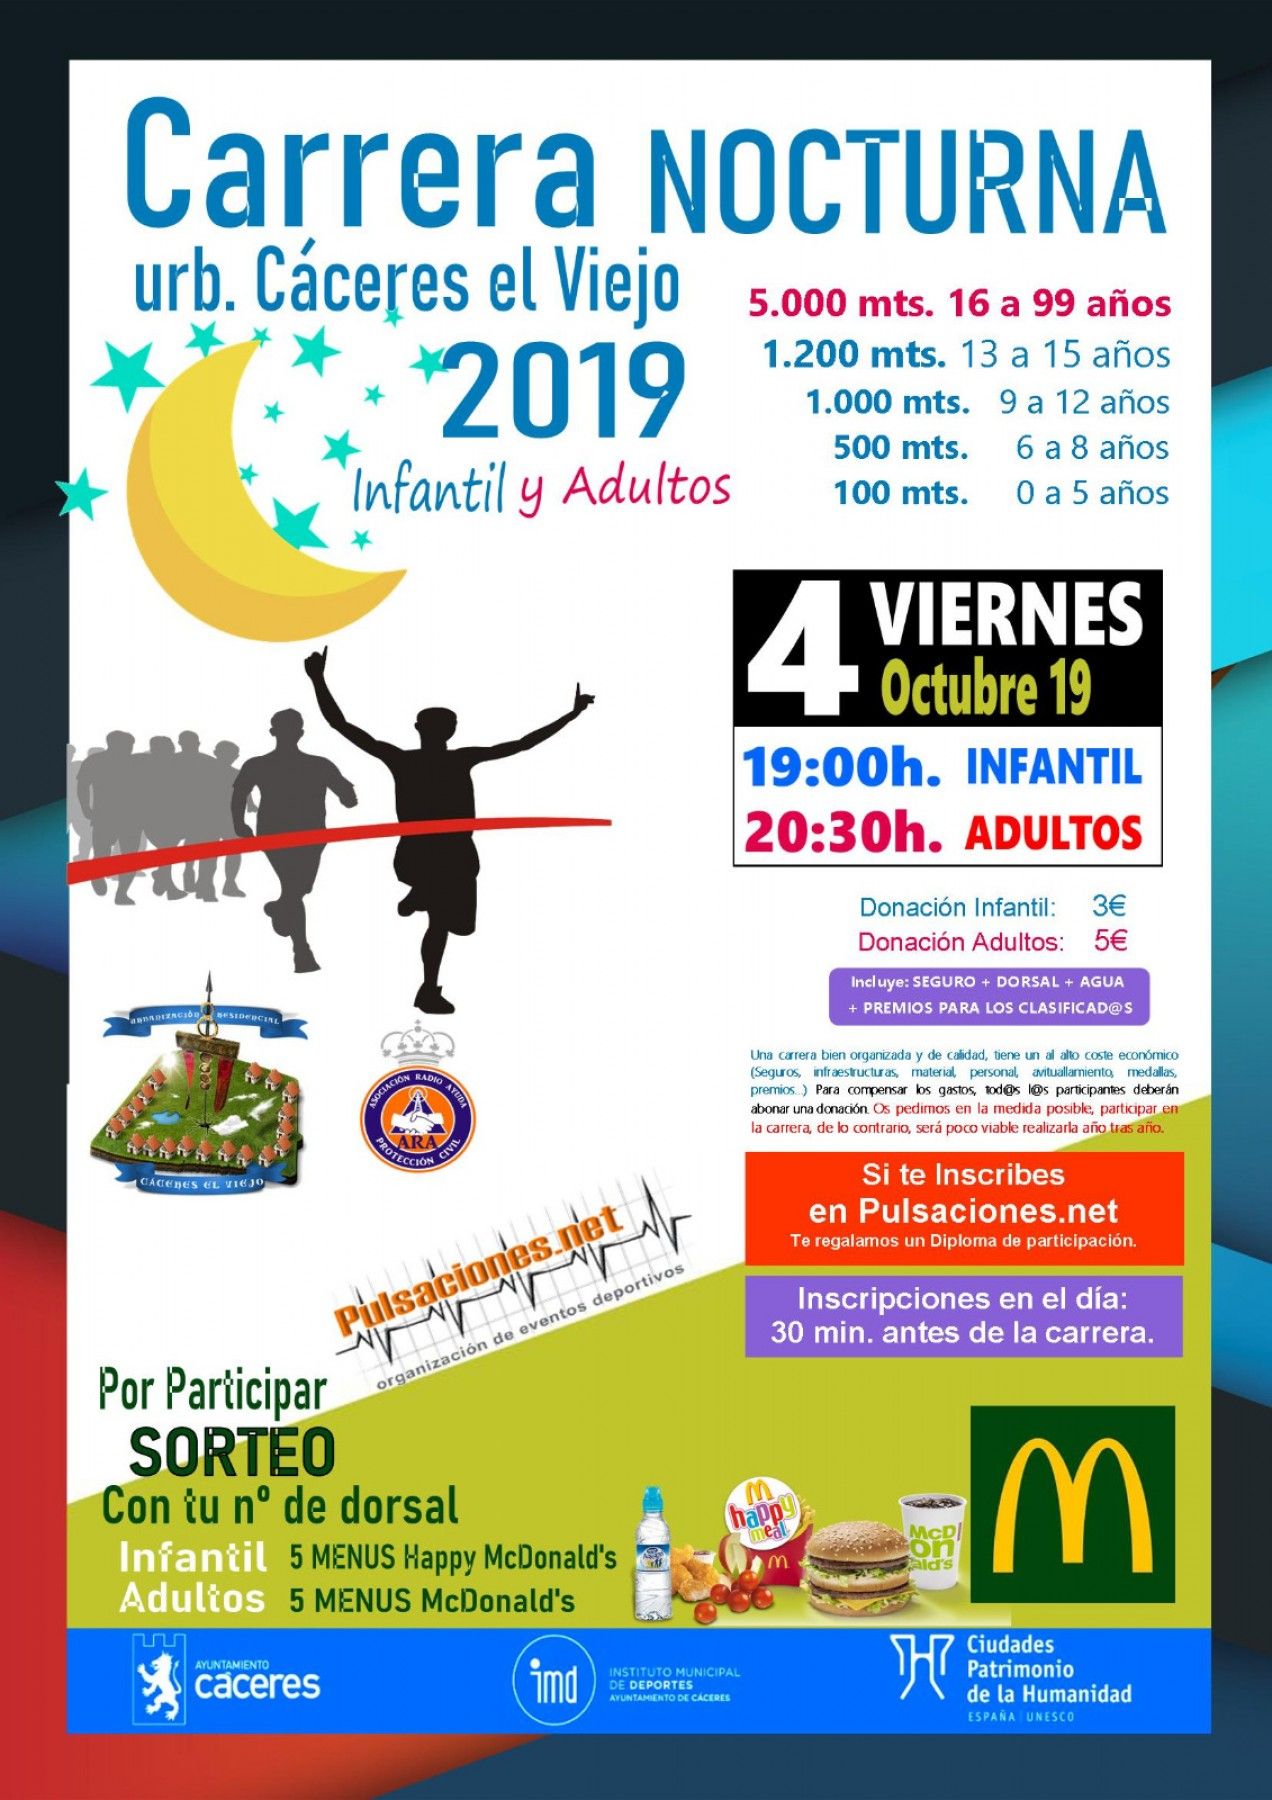 Carrera nocturna Cáceres el Viejo 2019 - Cáceres